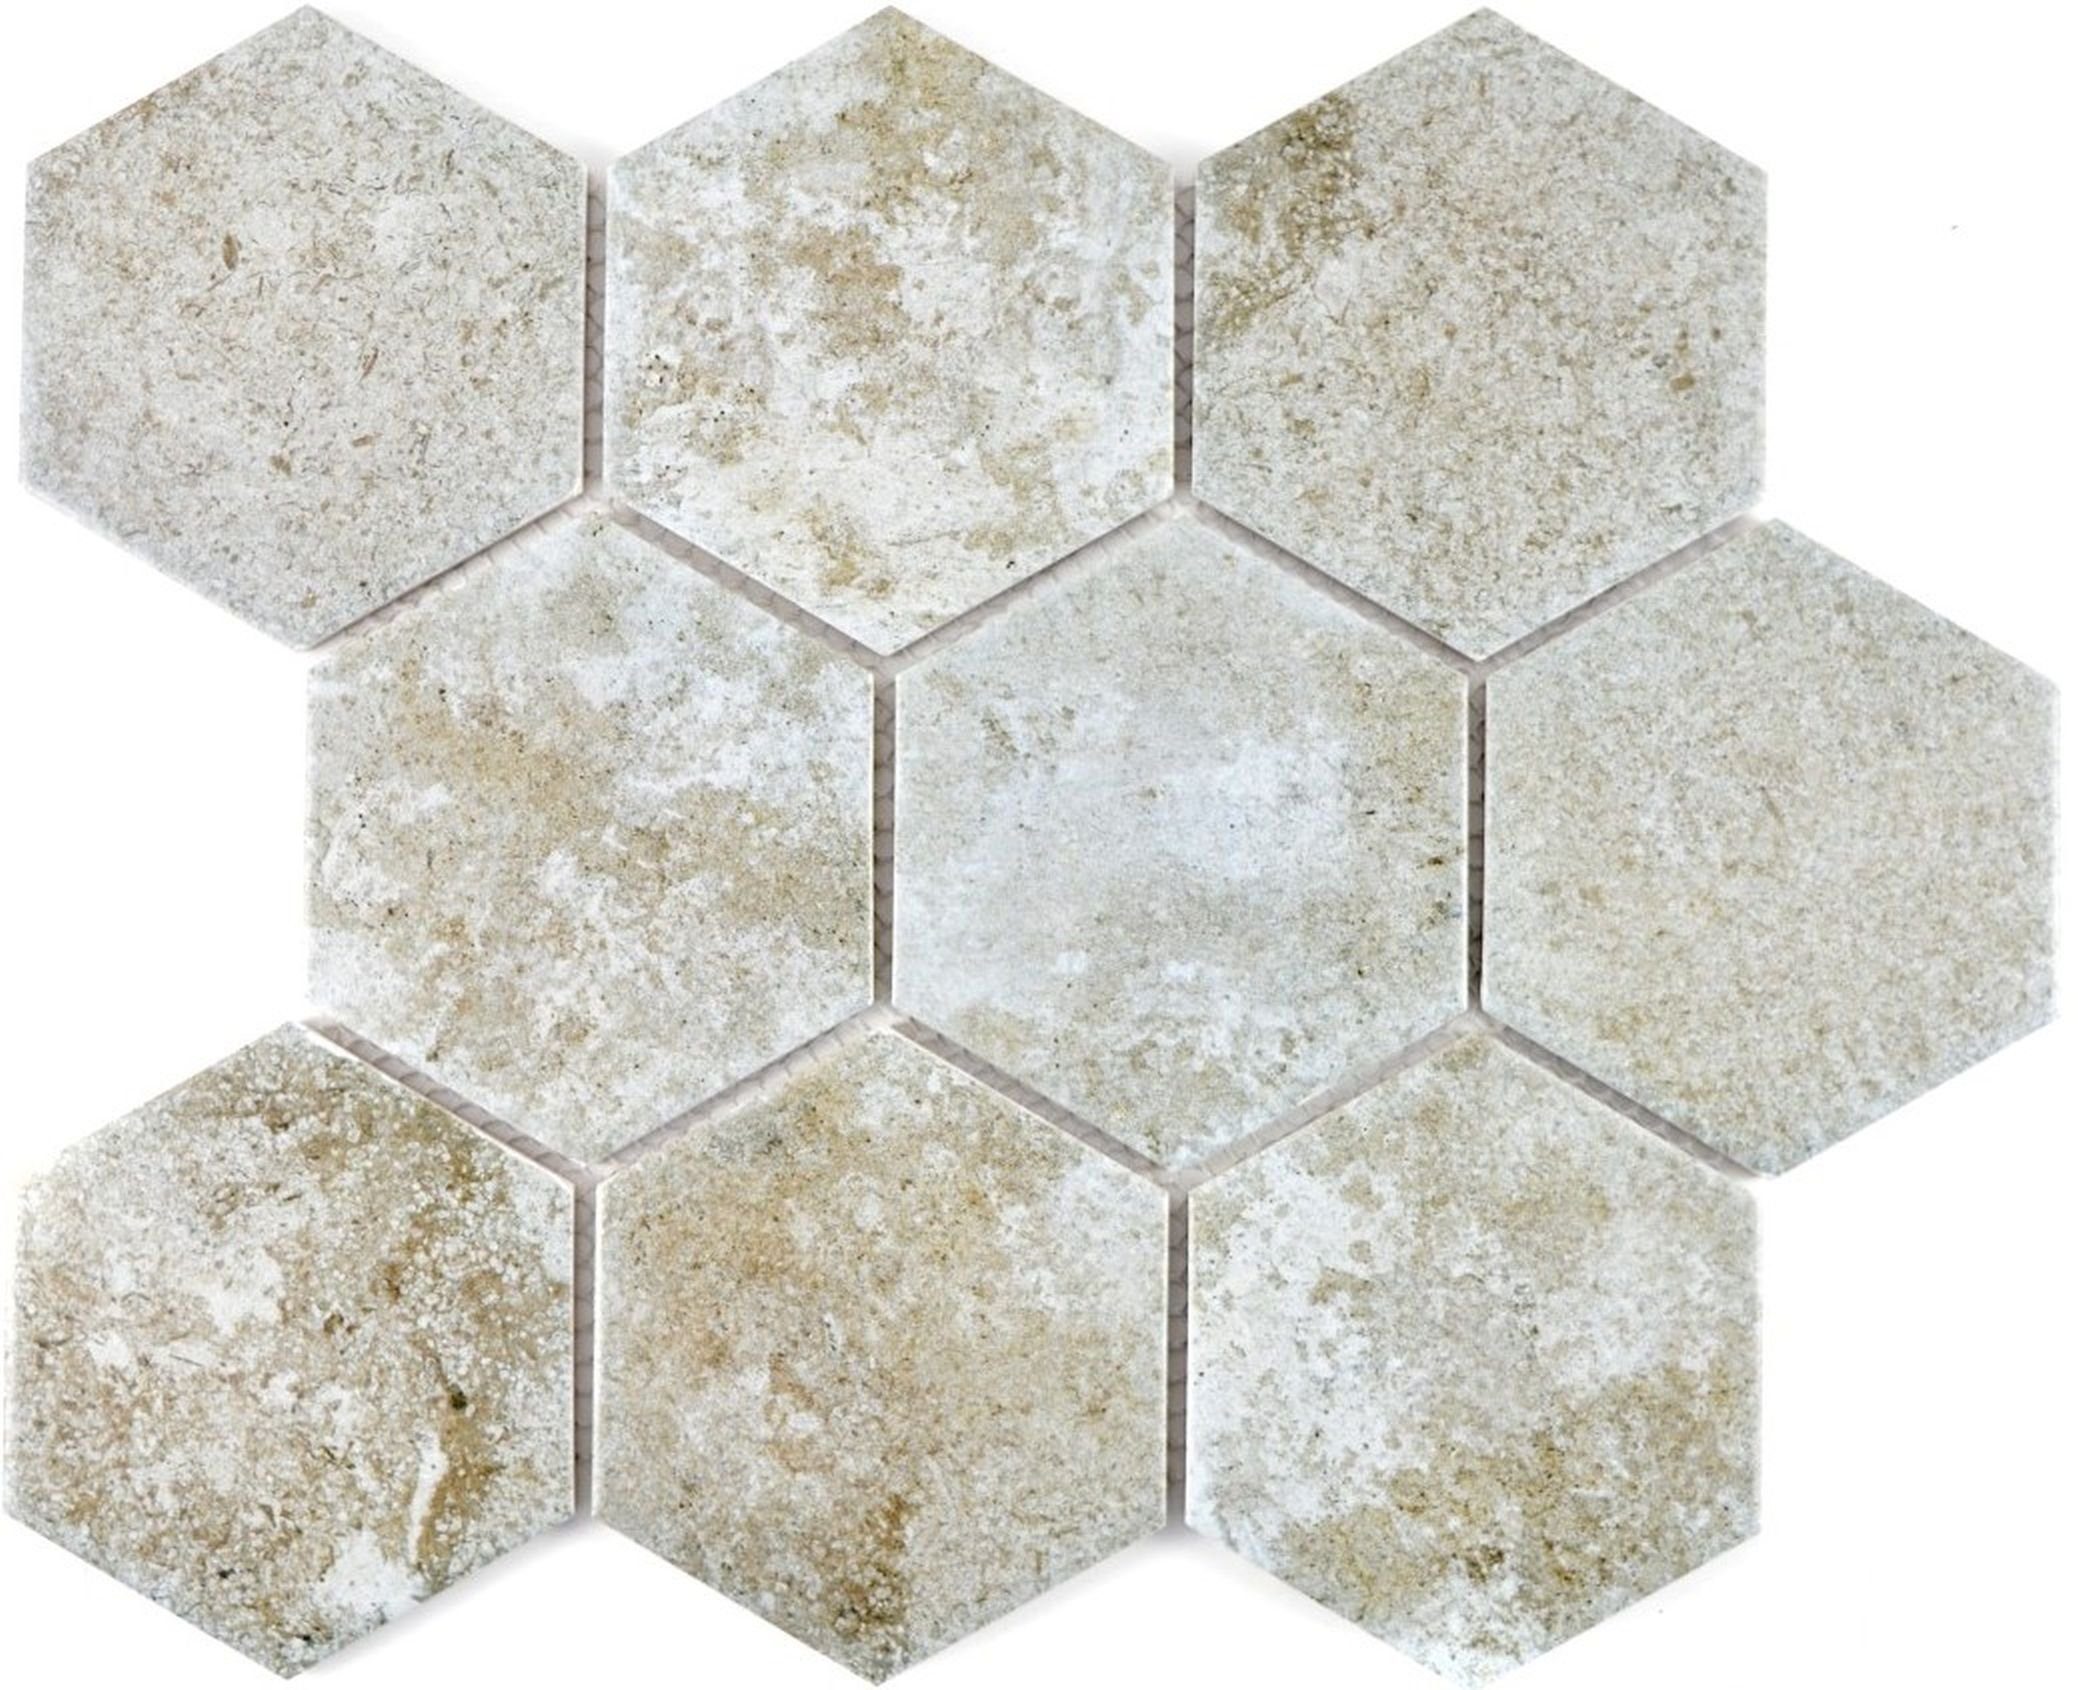 Mosani Mosaikfliesen Hexagonale Sechseck Mosaik Fliese Keramik grau Küche Fliese WC Wand